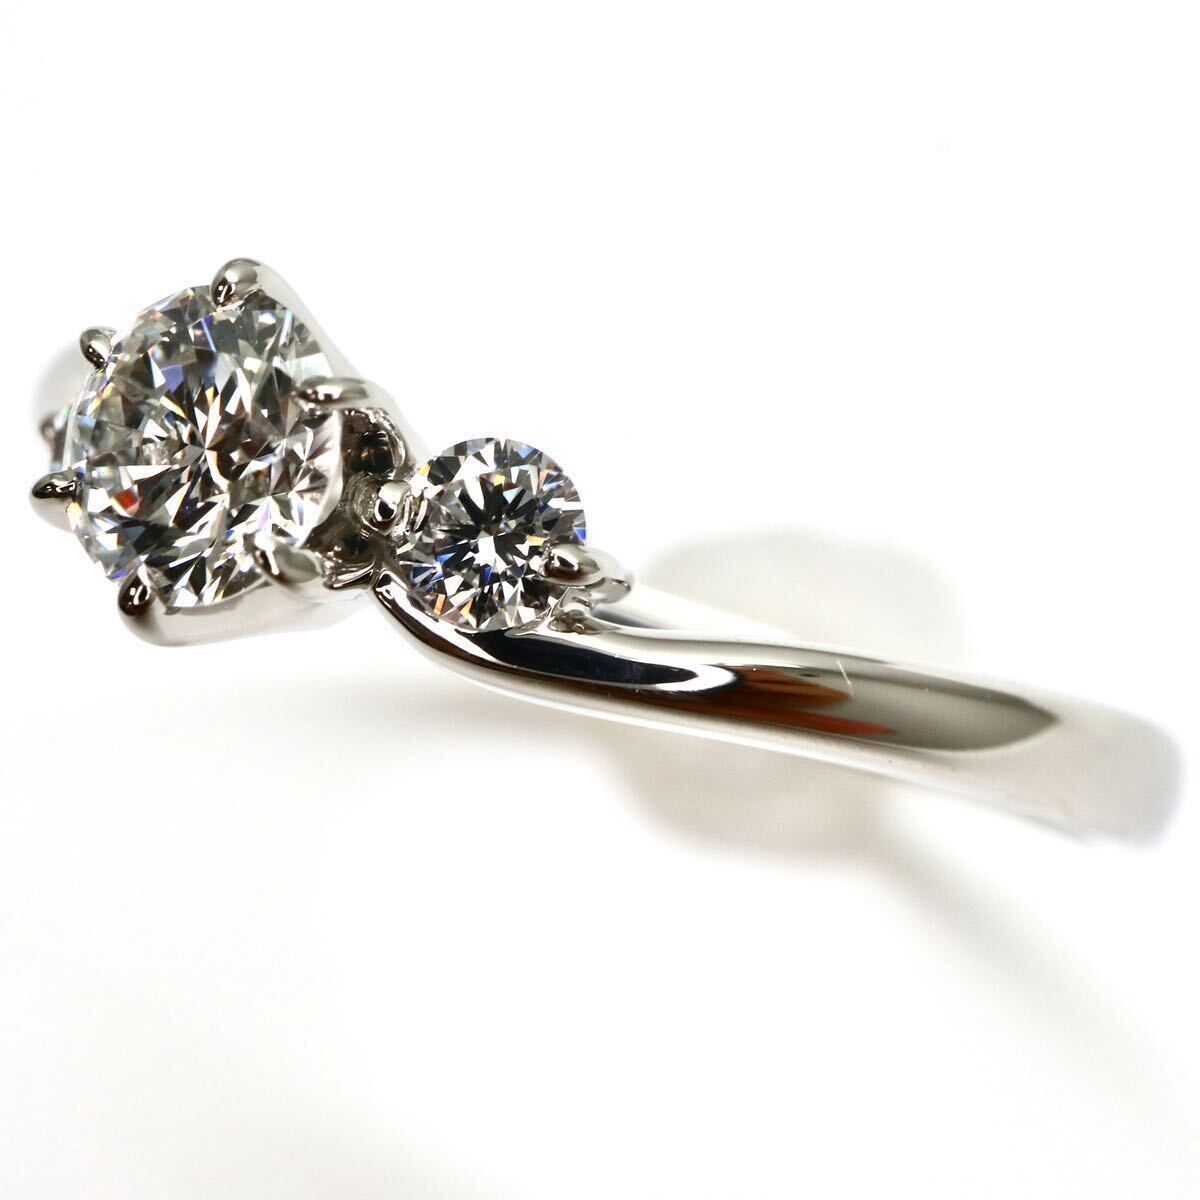 ROYAL ASSCHER( Royal в сборе .-) высокое качество!!*Pt950 натуральный бриллиантовое кольцо *M примерно 2.7g примерно 11 номер diamond ring кольцо EC1/EC7